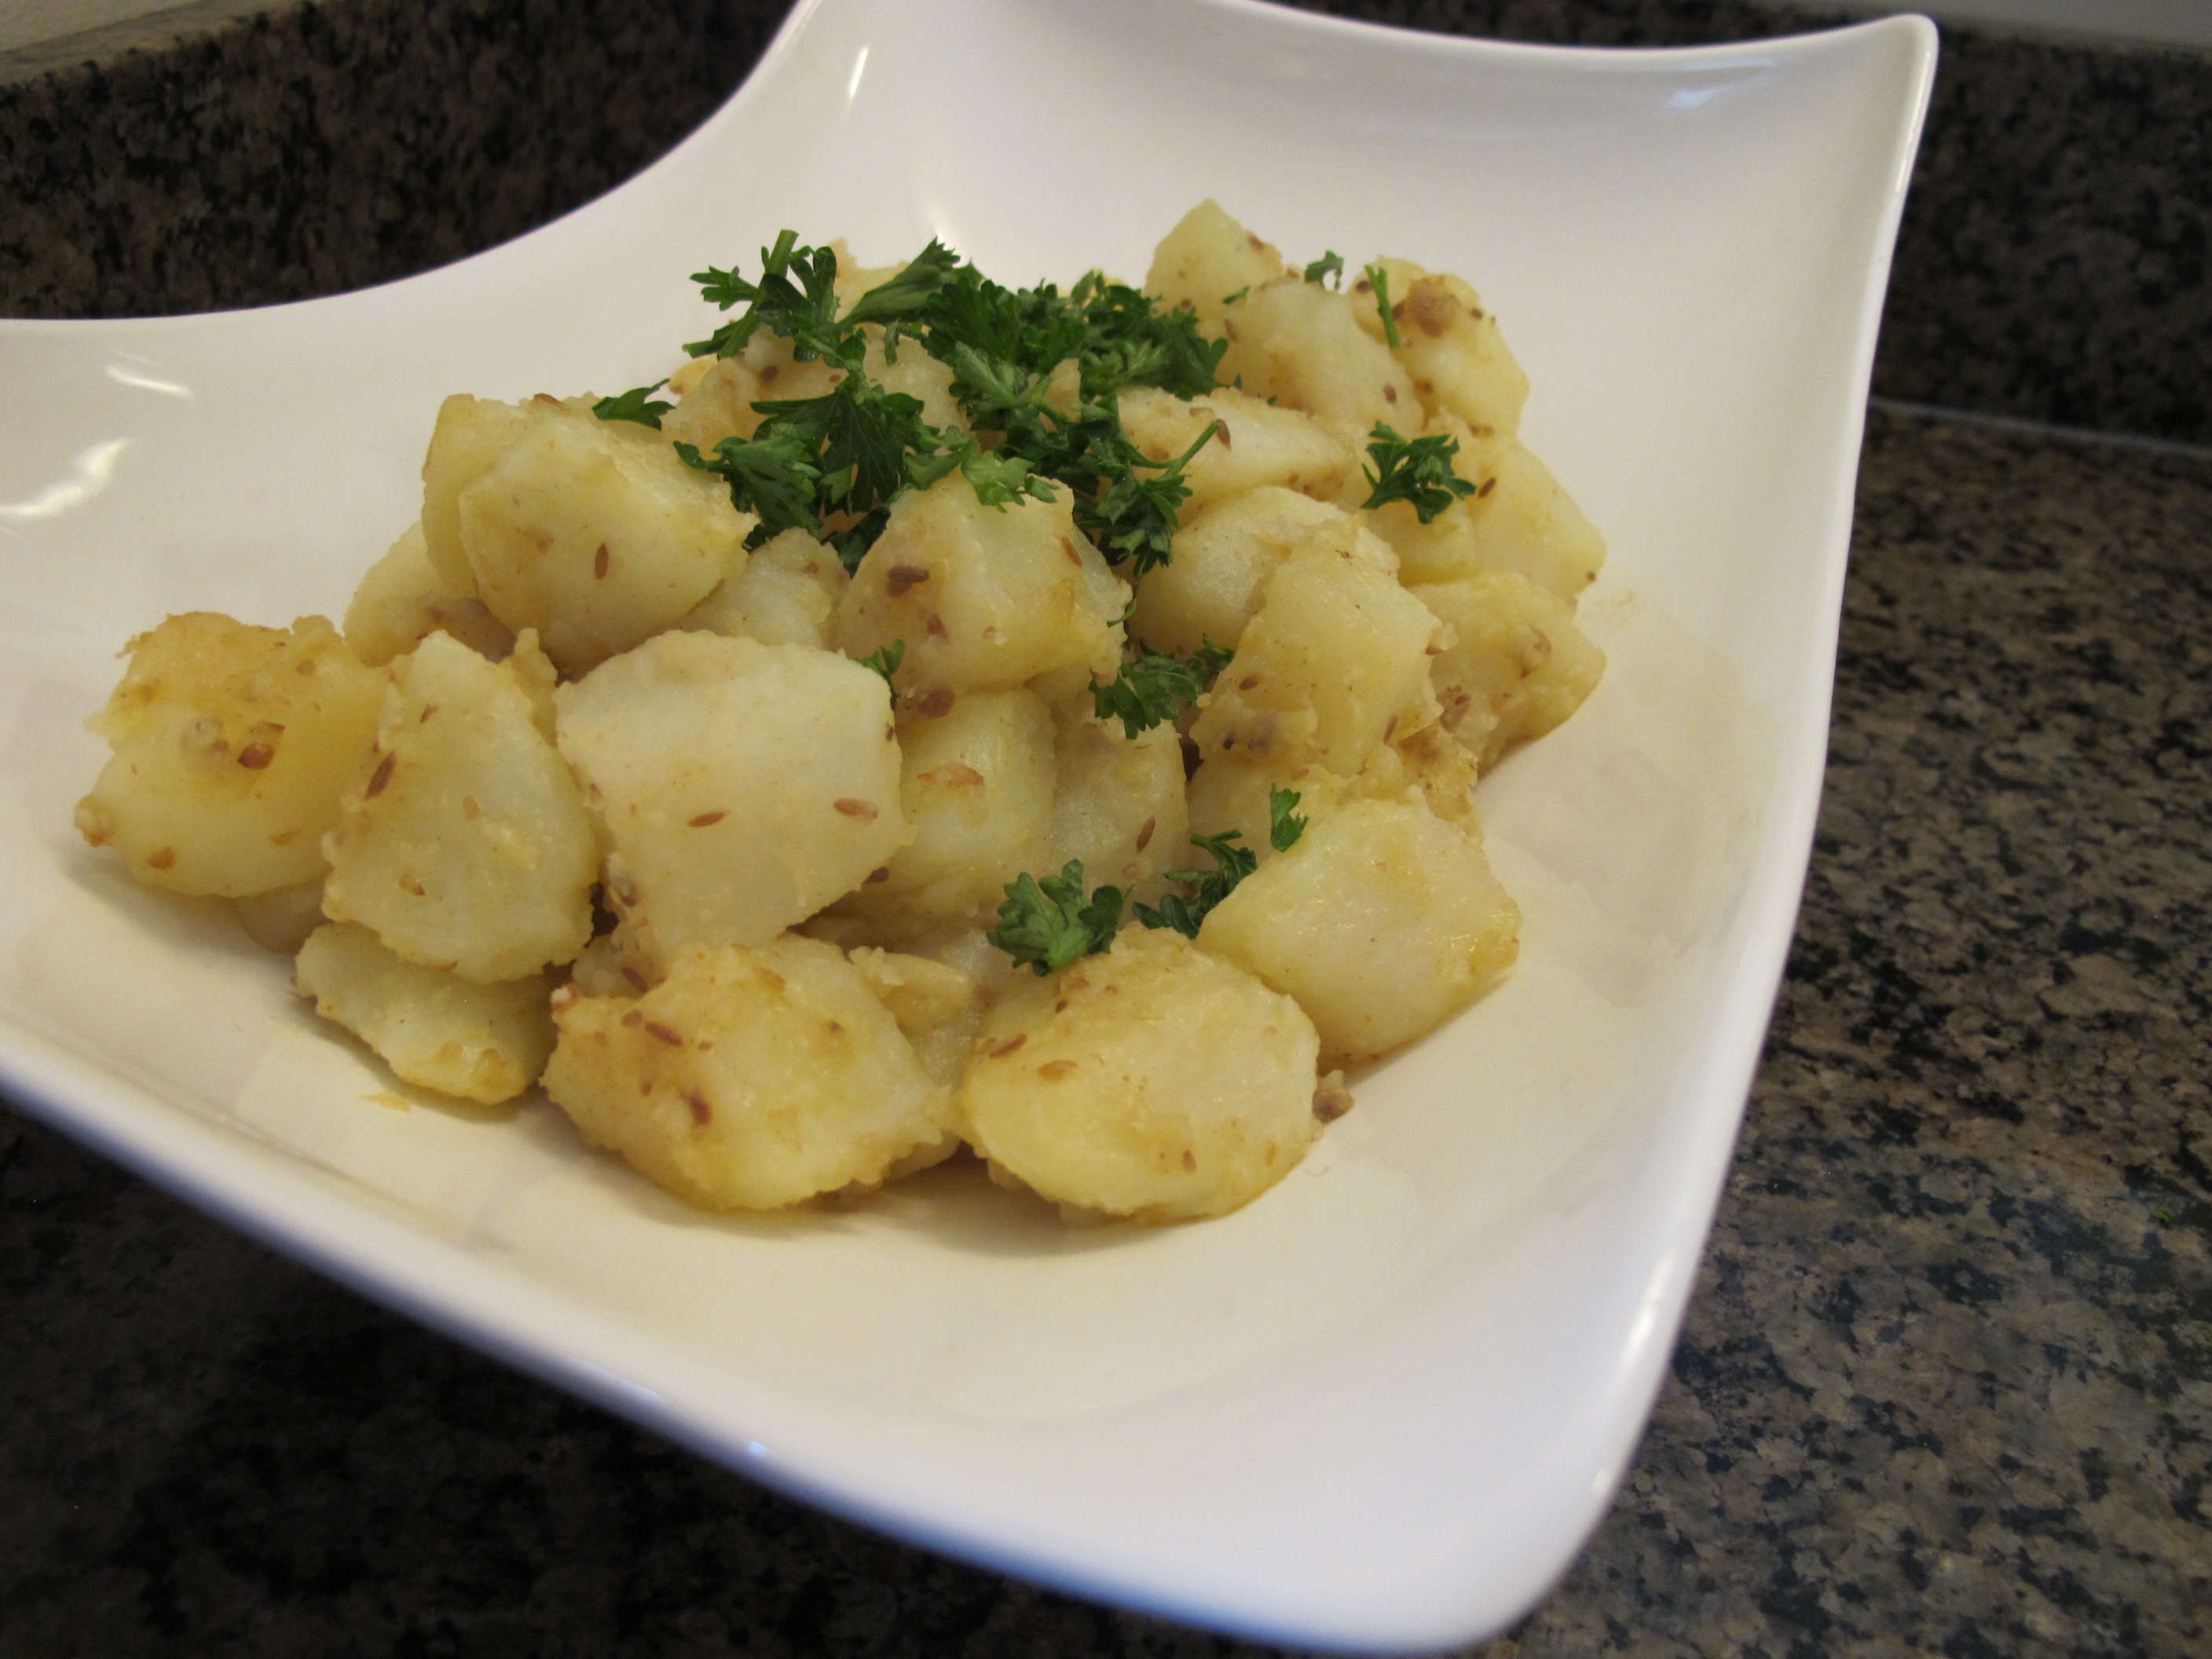 North African potato salad